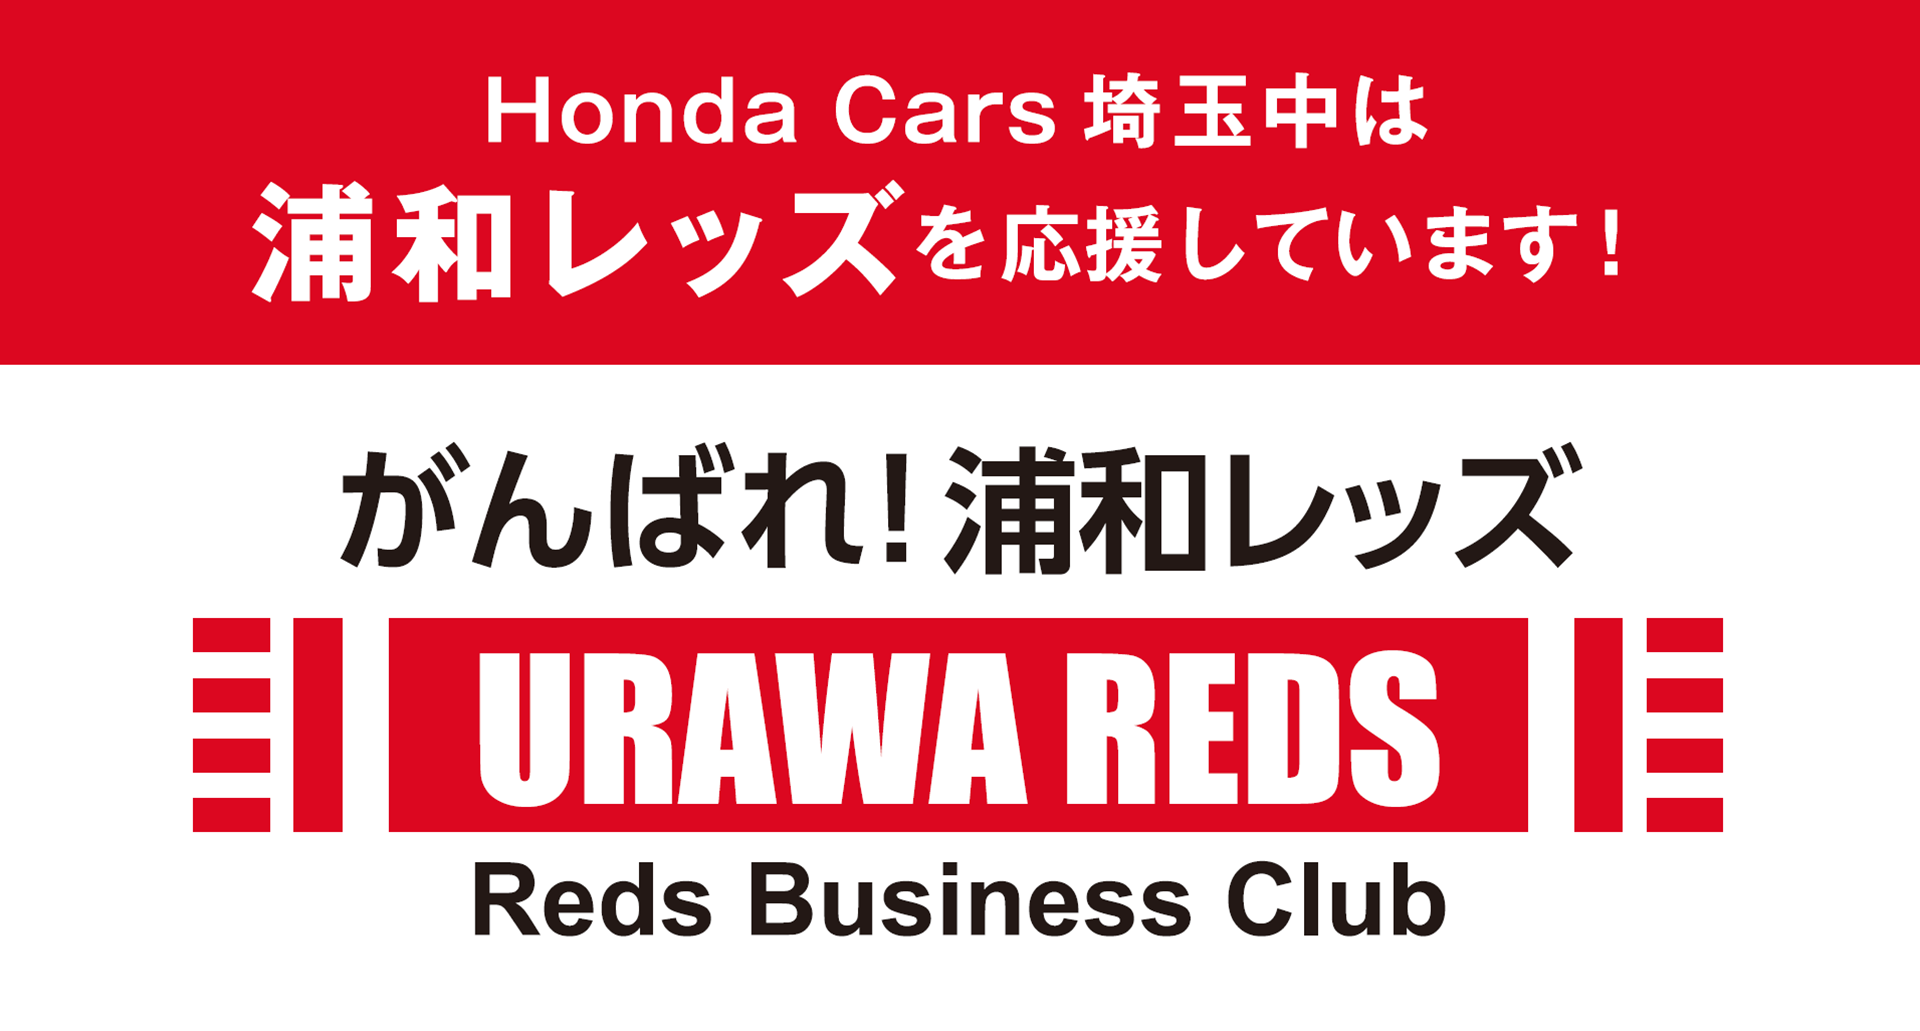 ホンダカーズ埼玉中は浦和レッズを応援しています Honda Cars 埼玉中